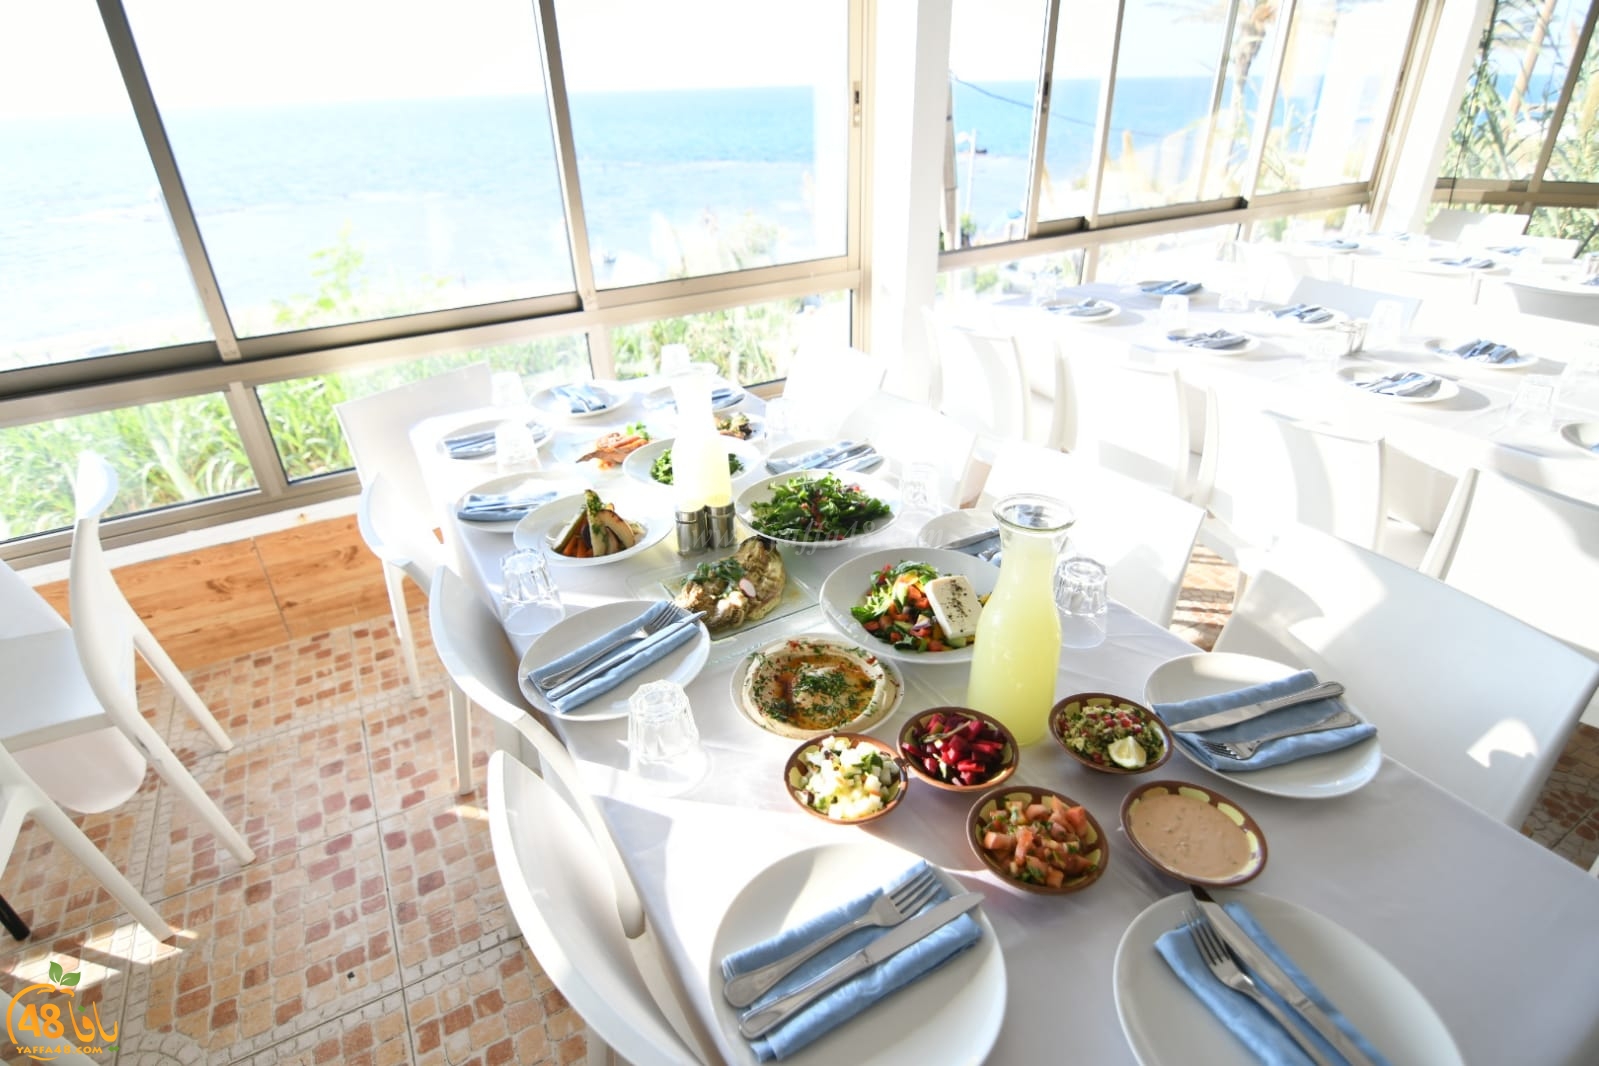  قريباً: افتتاح مطعم عروس البحر باباي الأقرب على شاطئ بحر يافا الساحر 